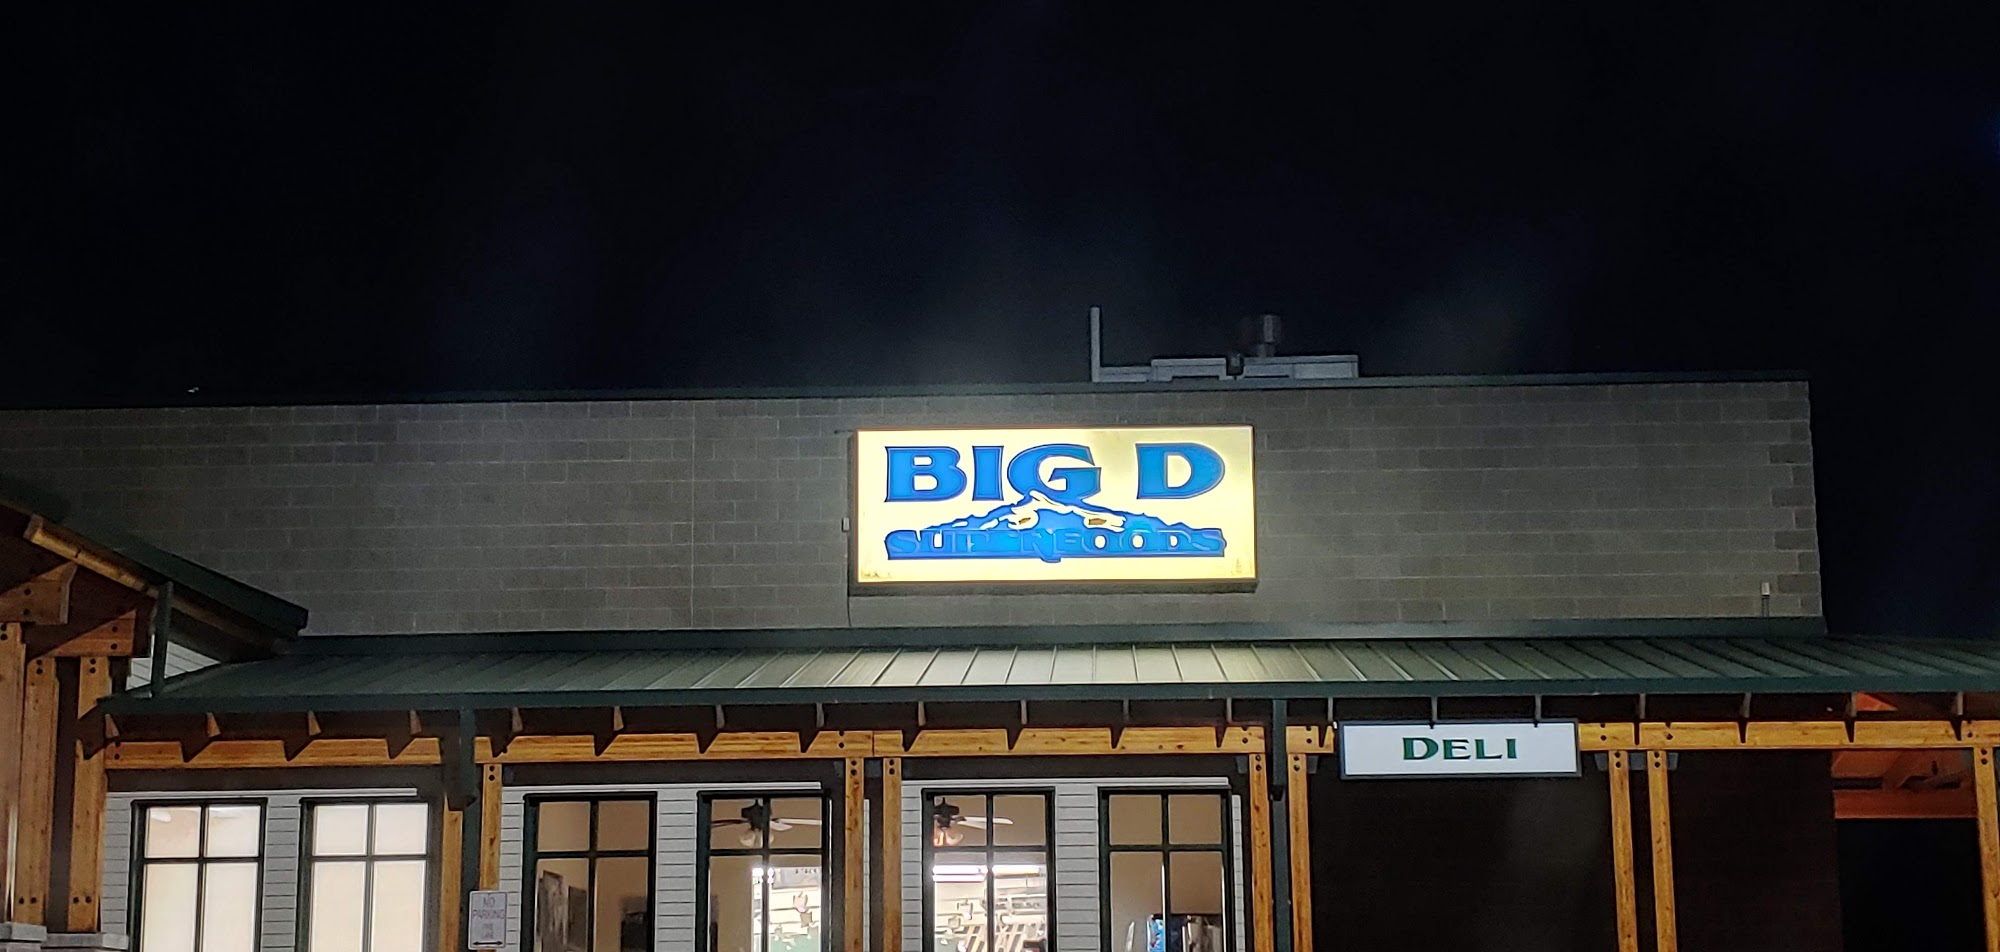 Big D Superfoods